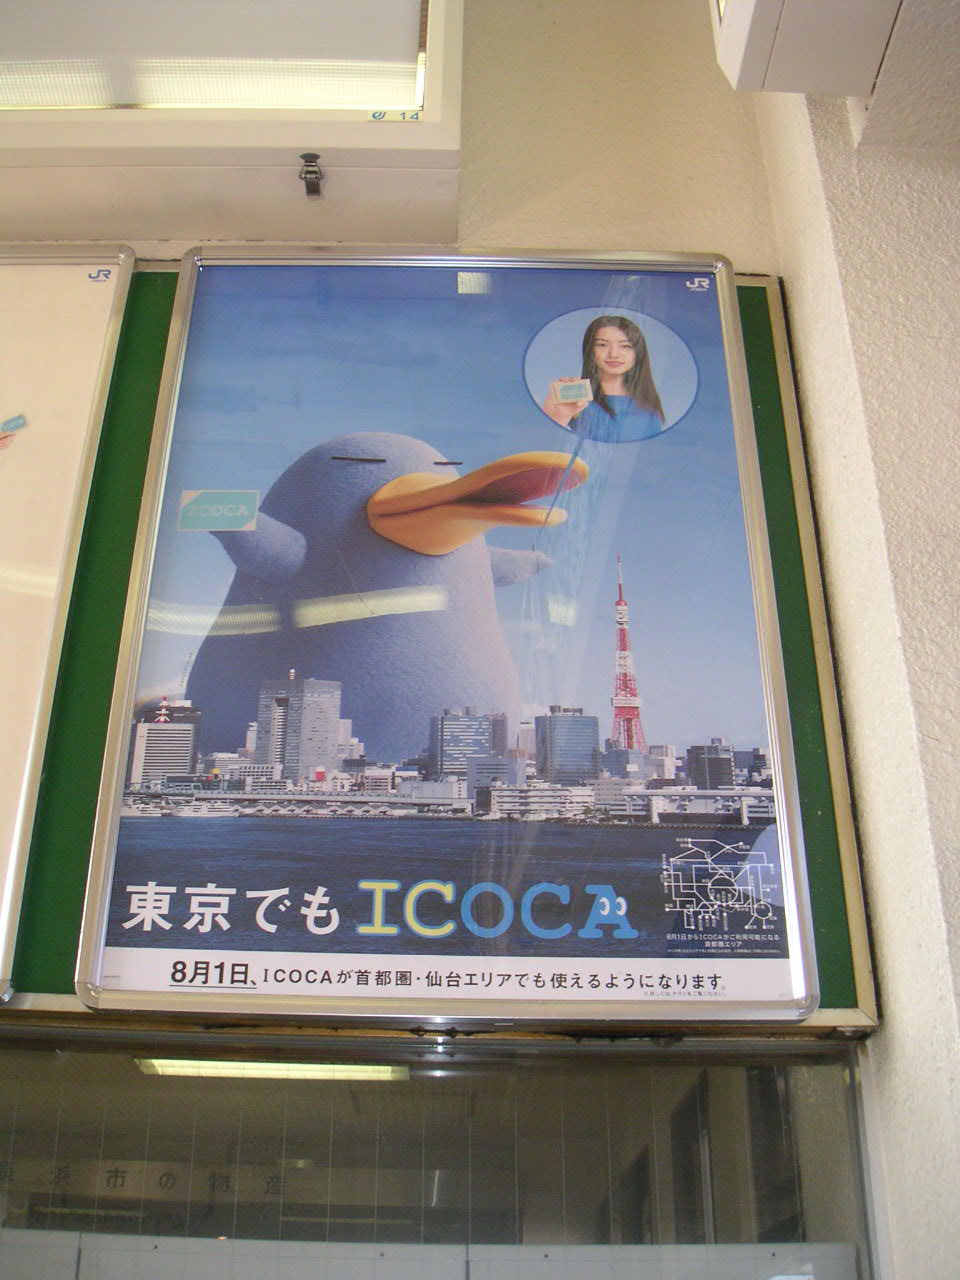 ICOCA Poster 4